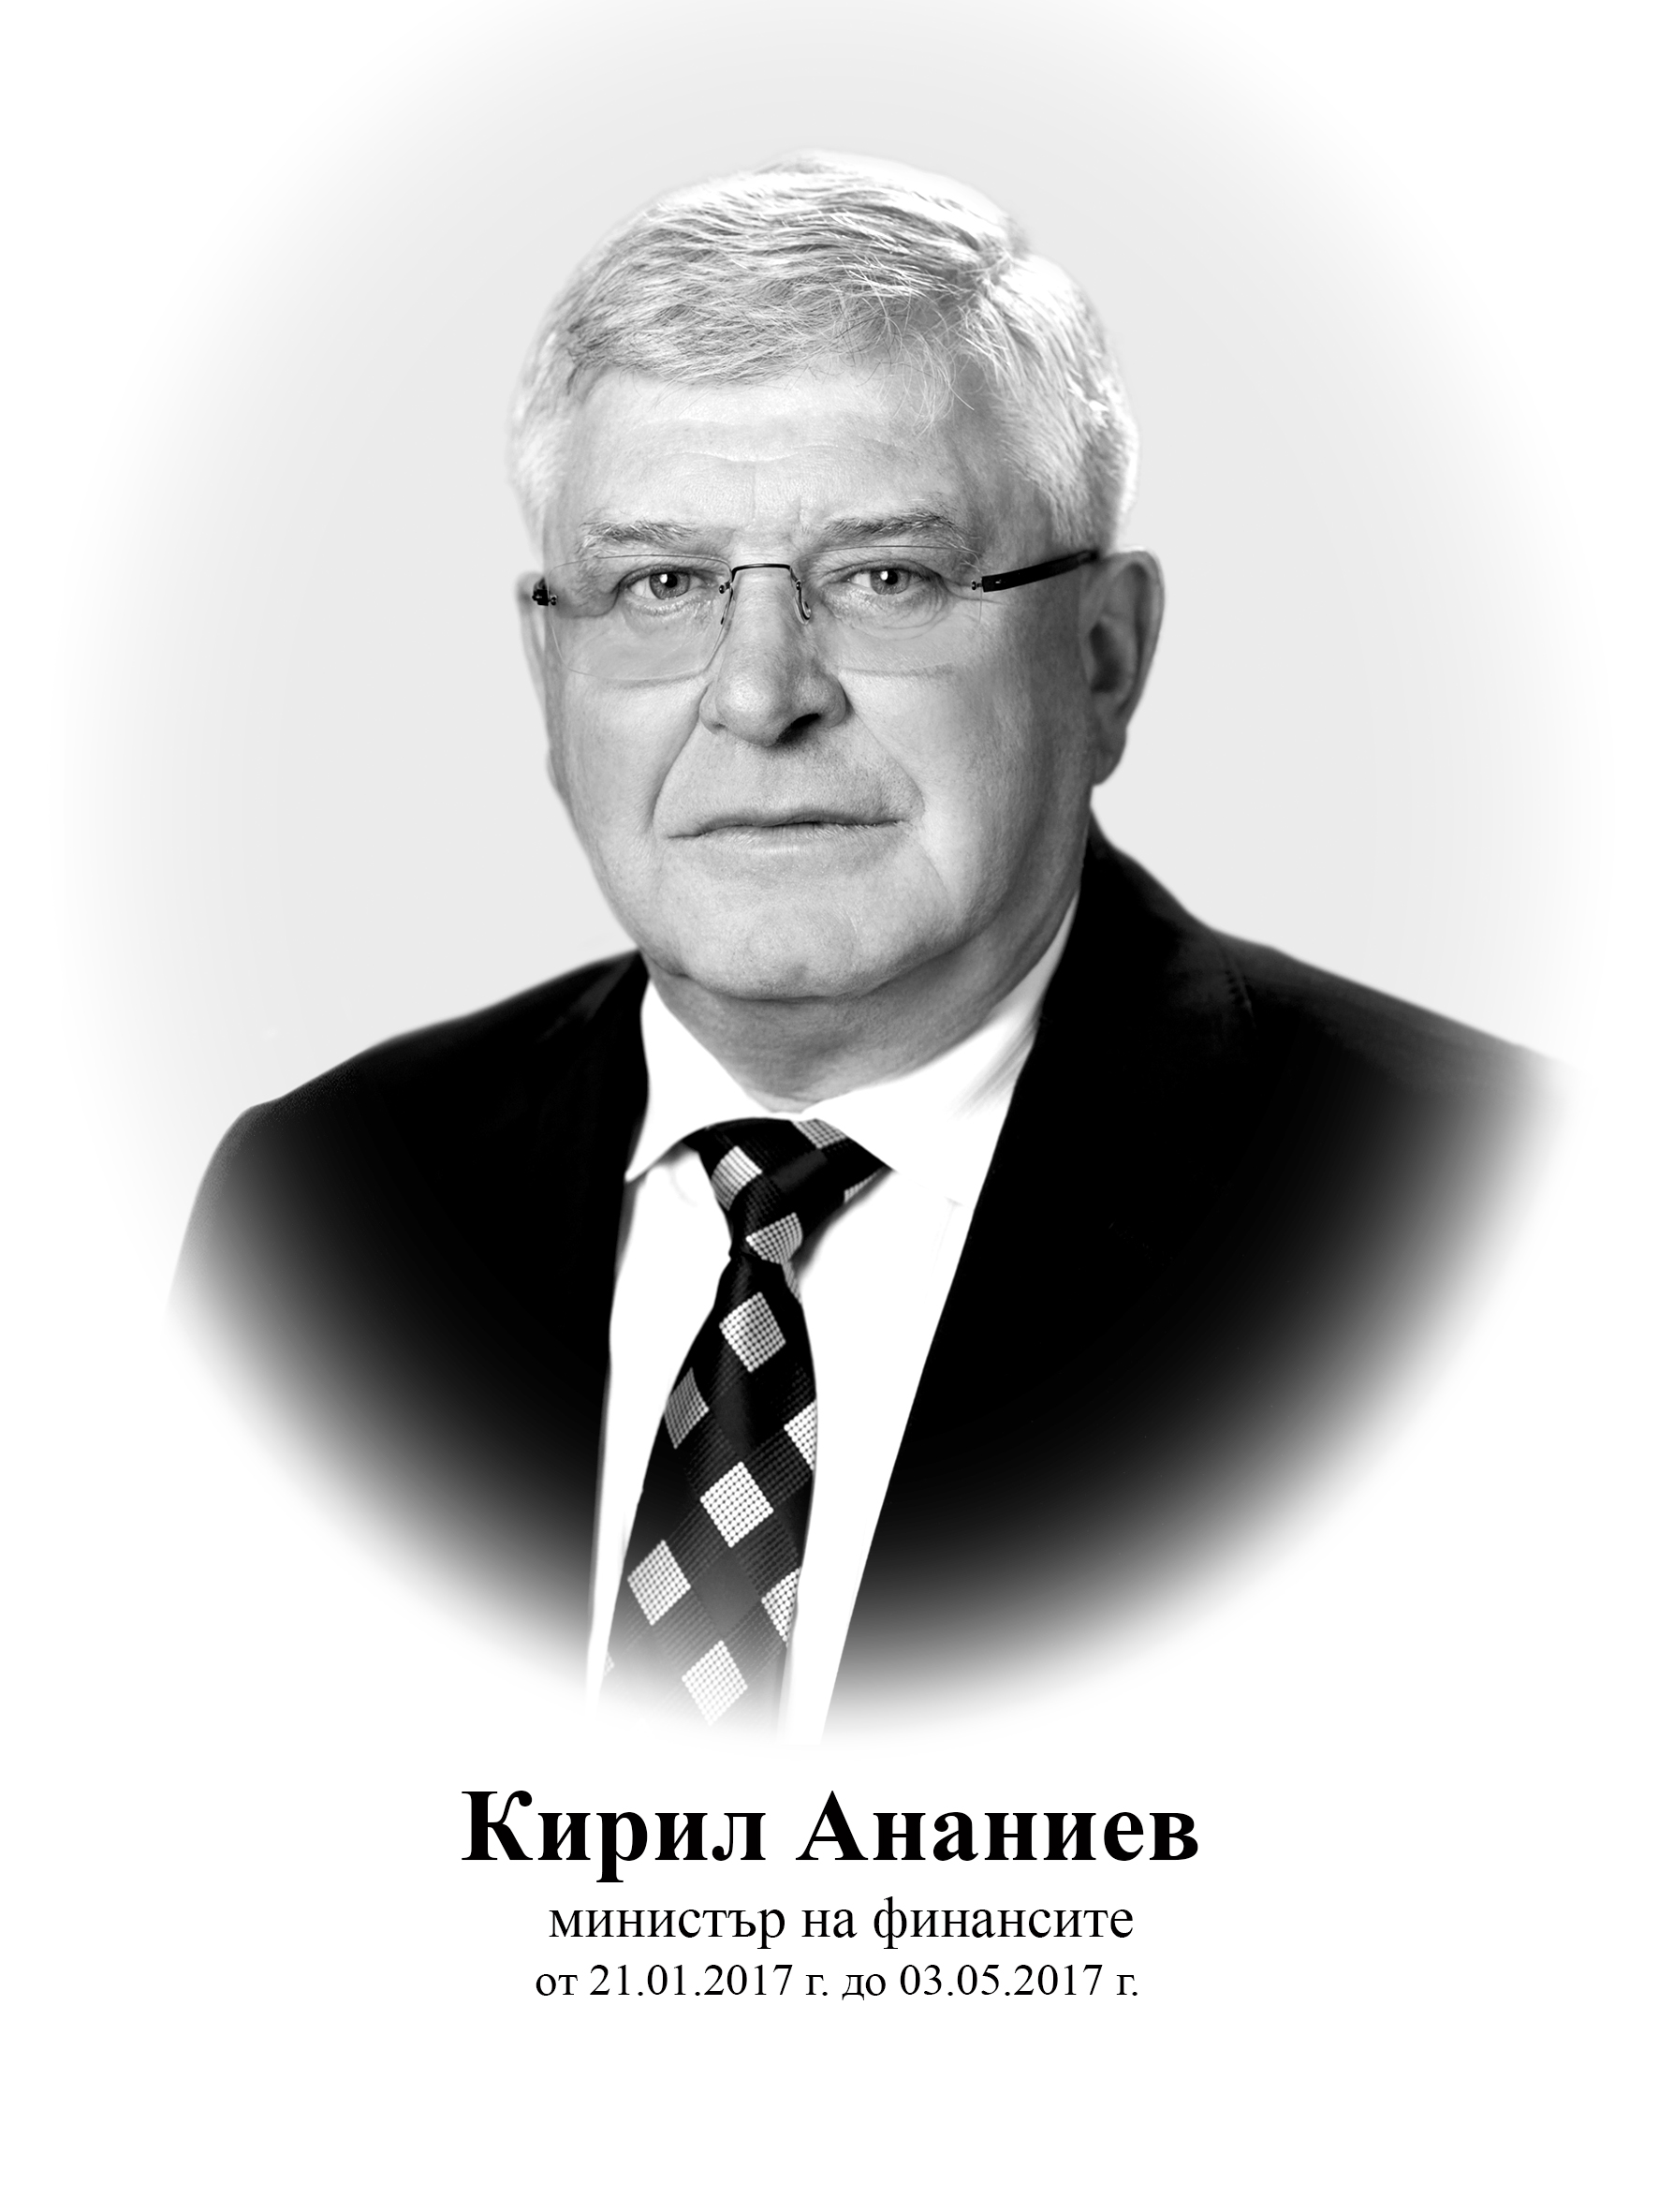 Kiril Ananiev